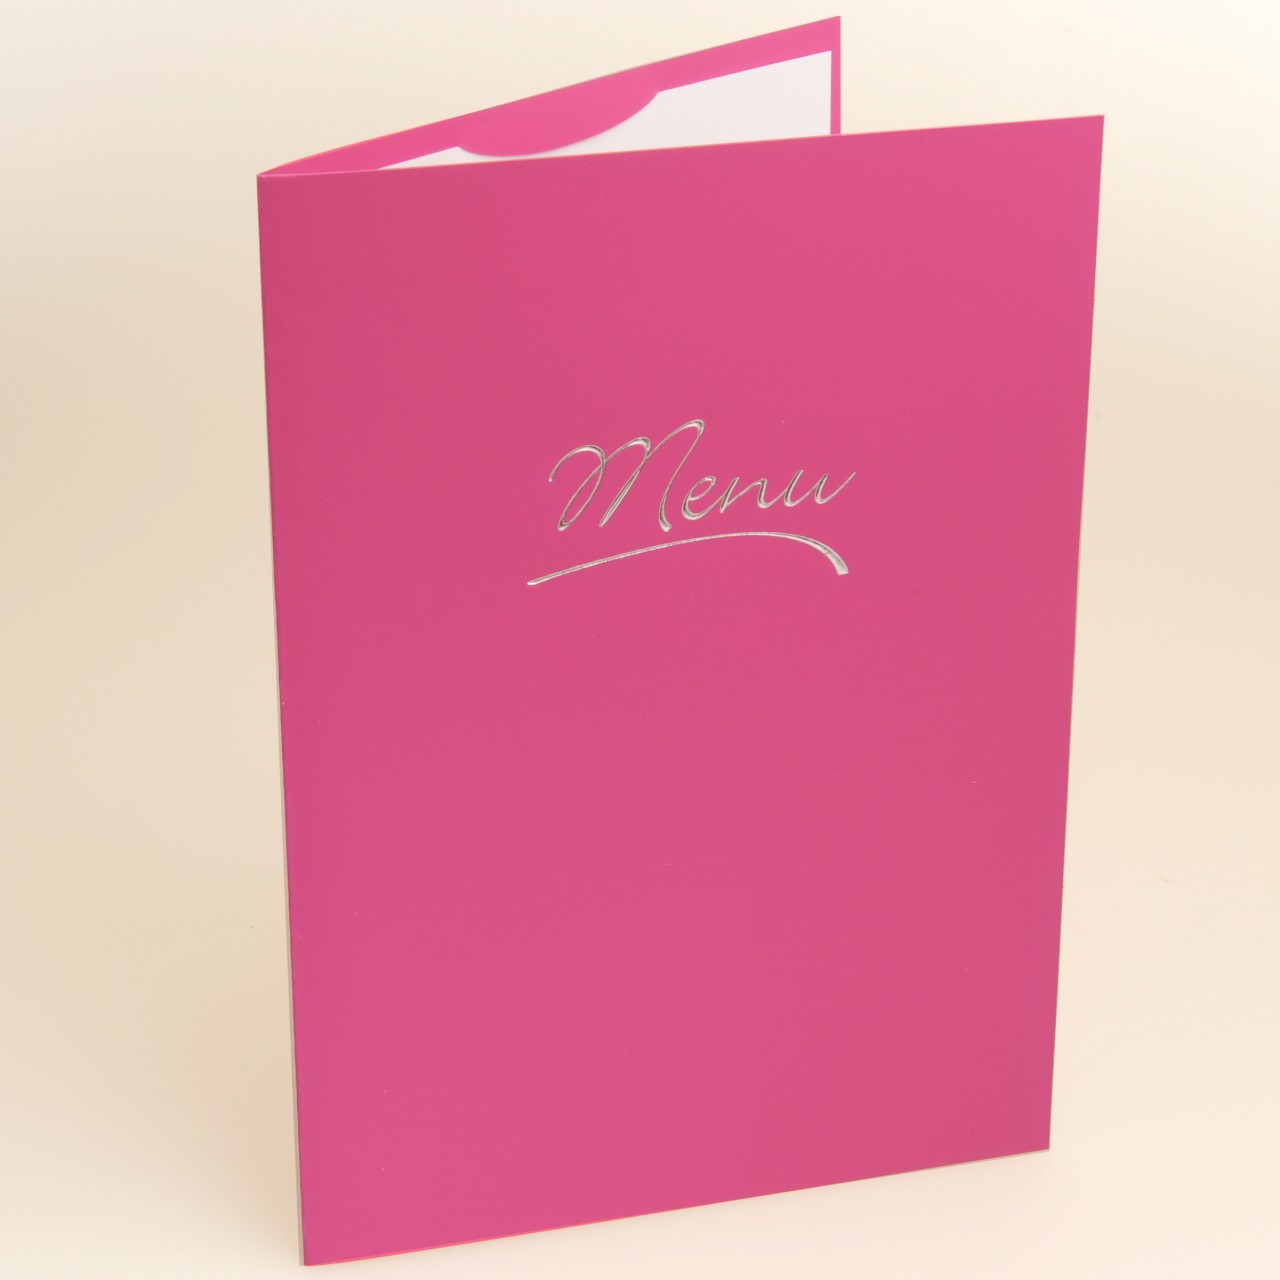 Pinkfarbene A5-Tischkarte mit silberfarbener Folienprägung